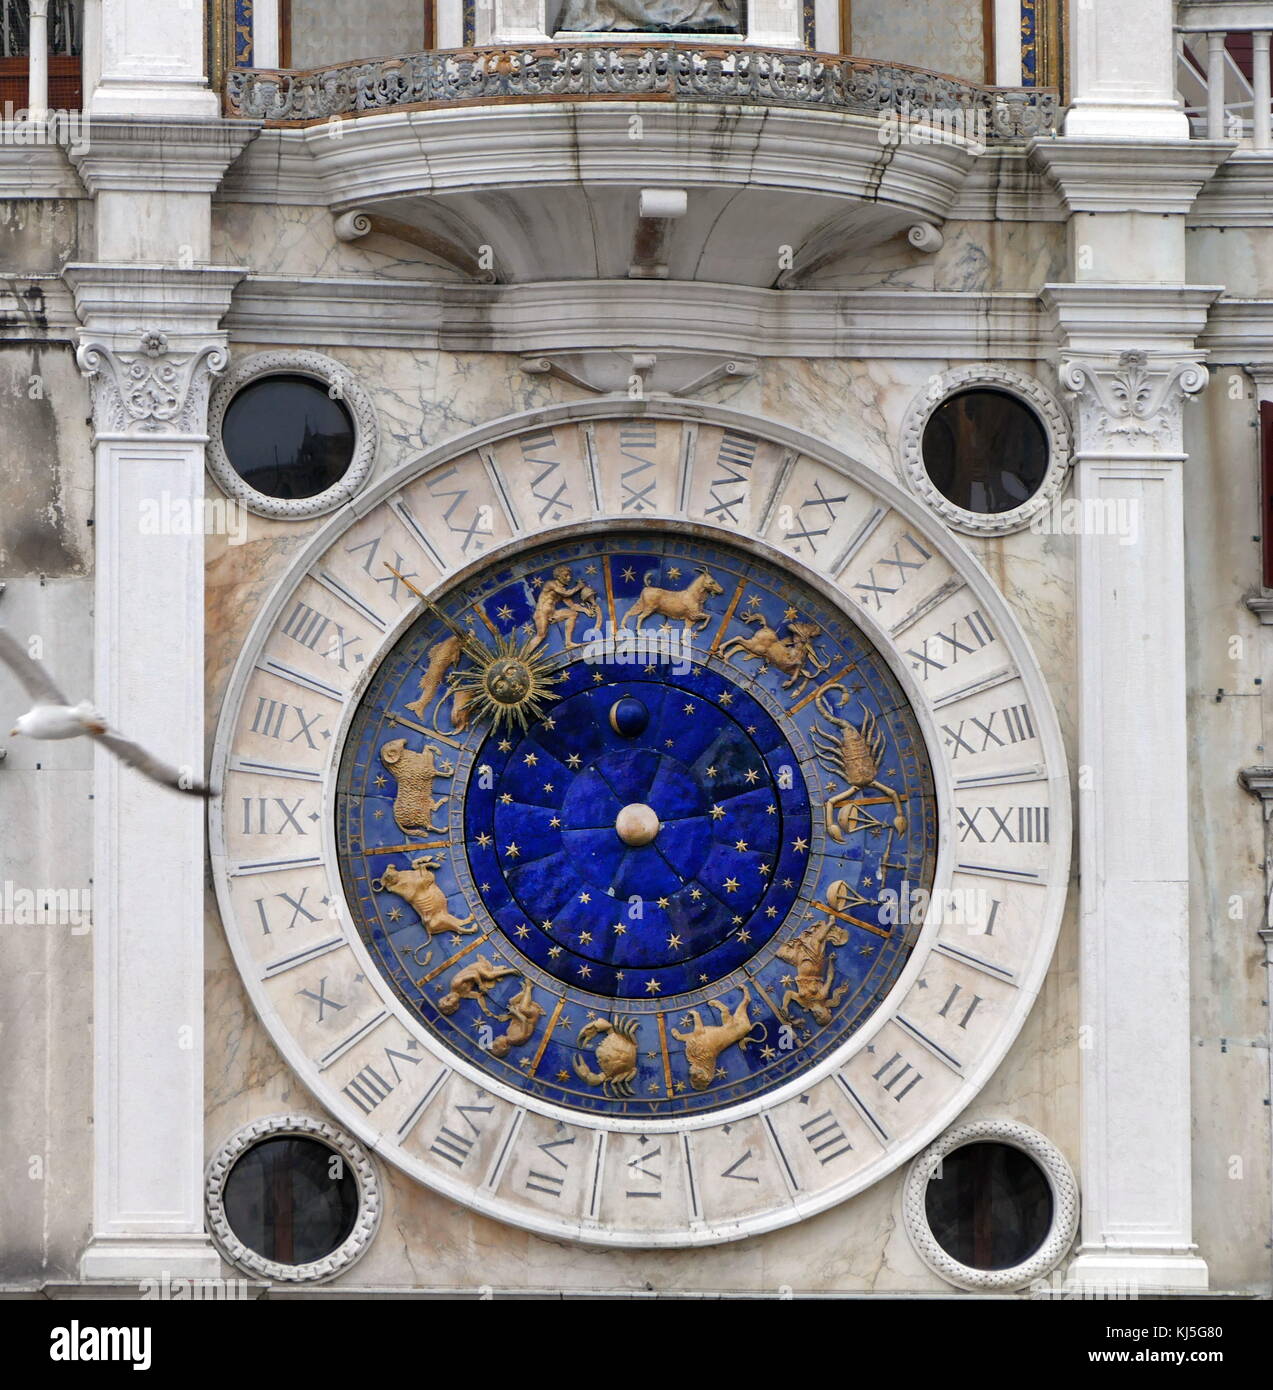 Reloj de San Marcos el reloj ubicado en la torre del reloj en la Plaza de San Marcos Venecia, contiguo a la Procuratie Vecchie. La primera situada en la